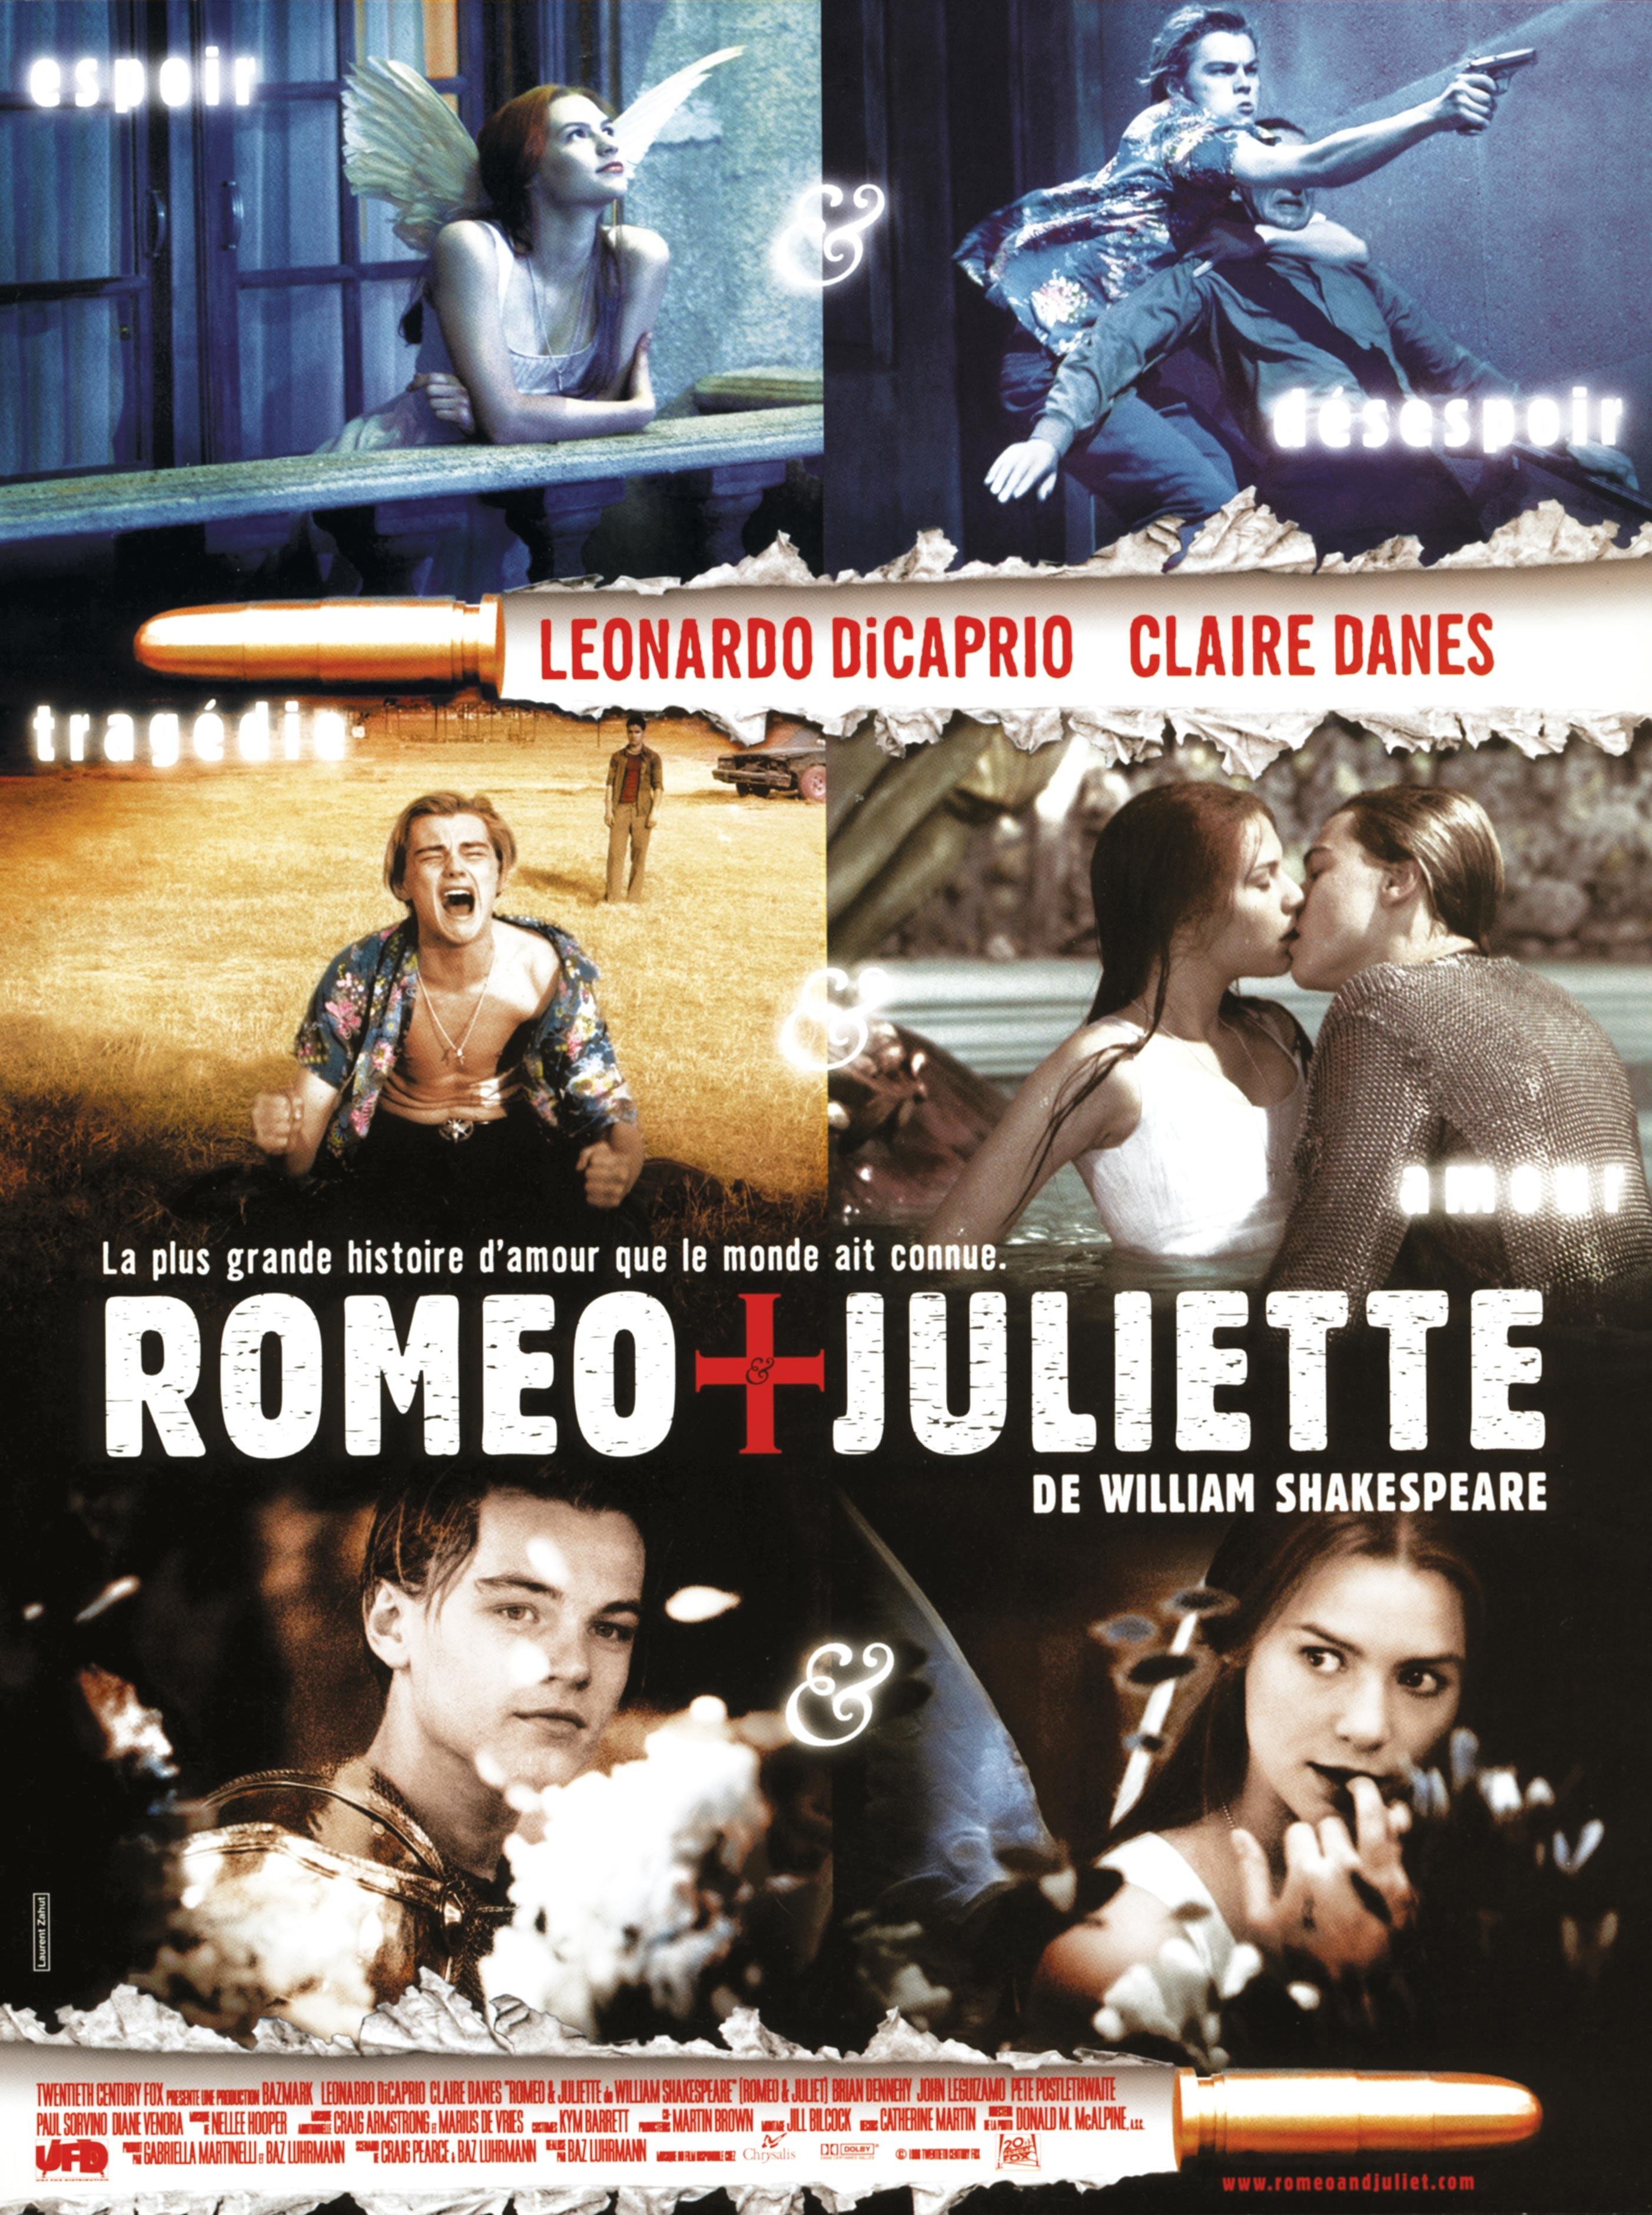 Roméo et Juliette, une tragédie amoureuse adaptée au cinéma